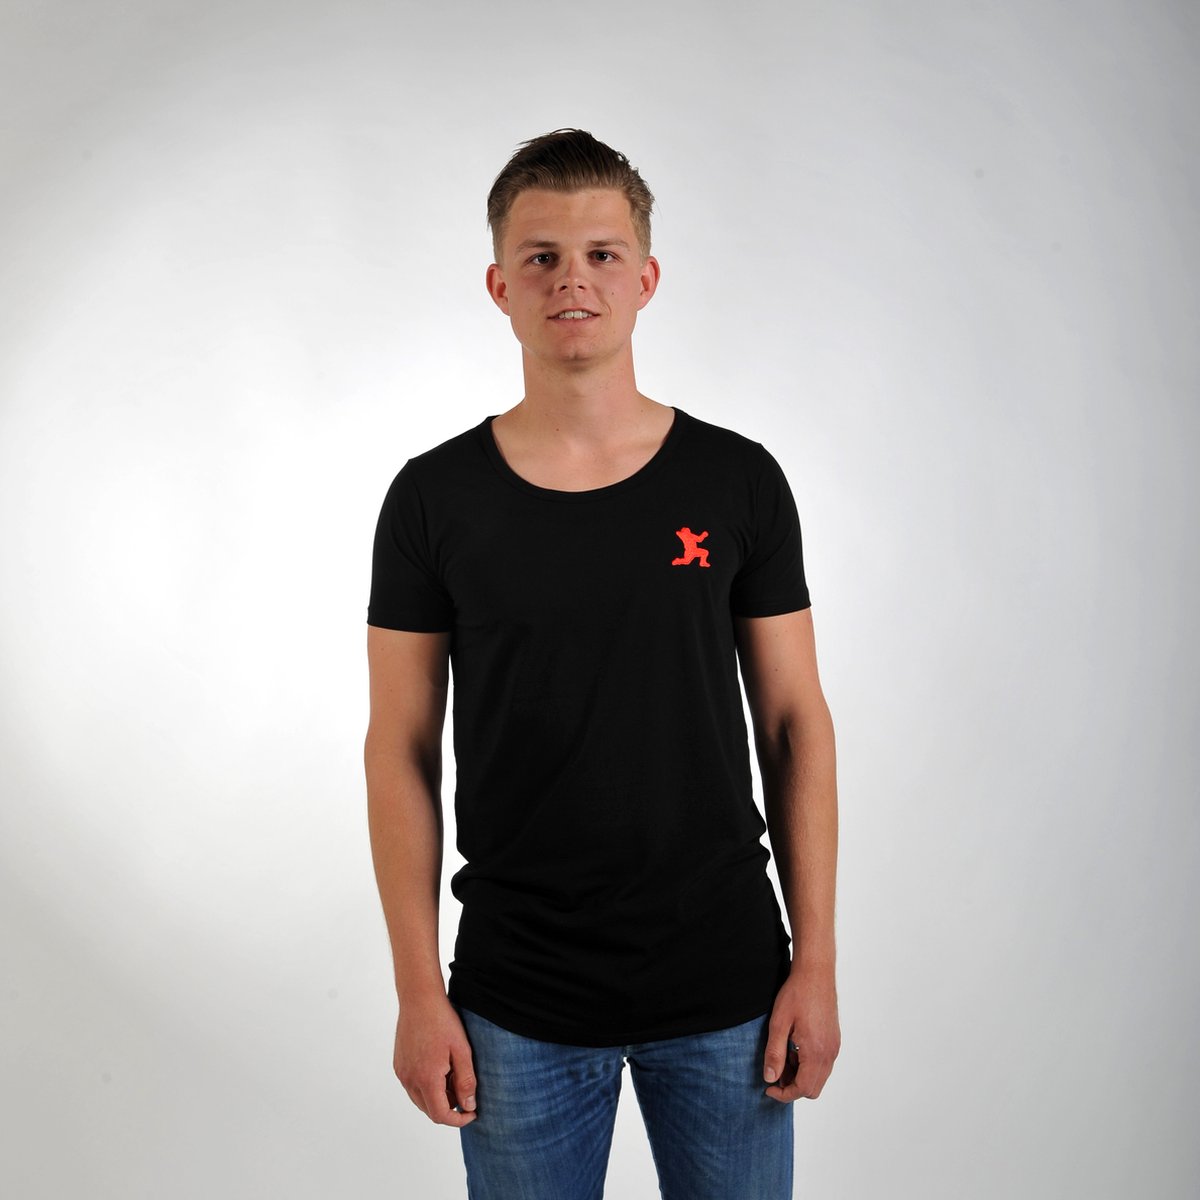 Imperatore - Andy van der Meijde t-shirt - zwart - rood logo - Maat XL